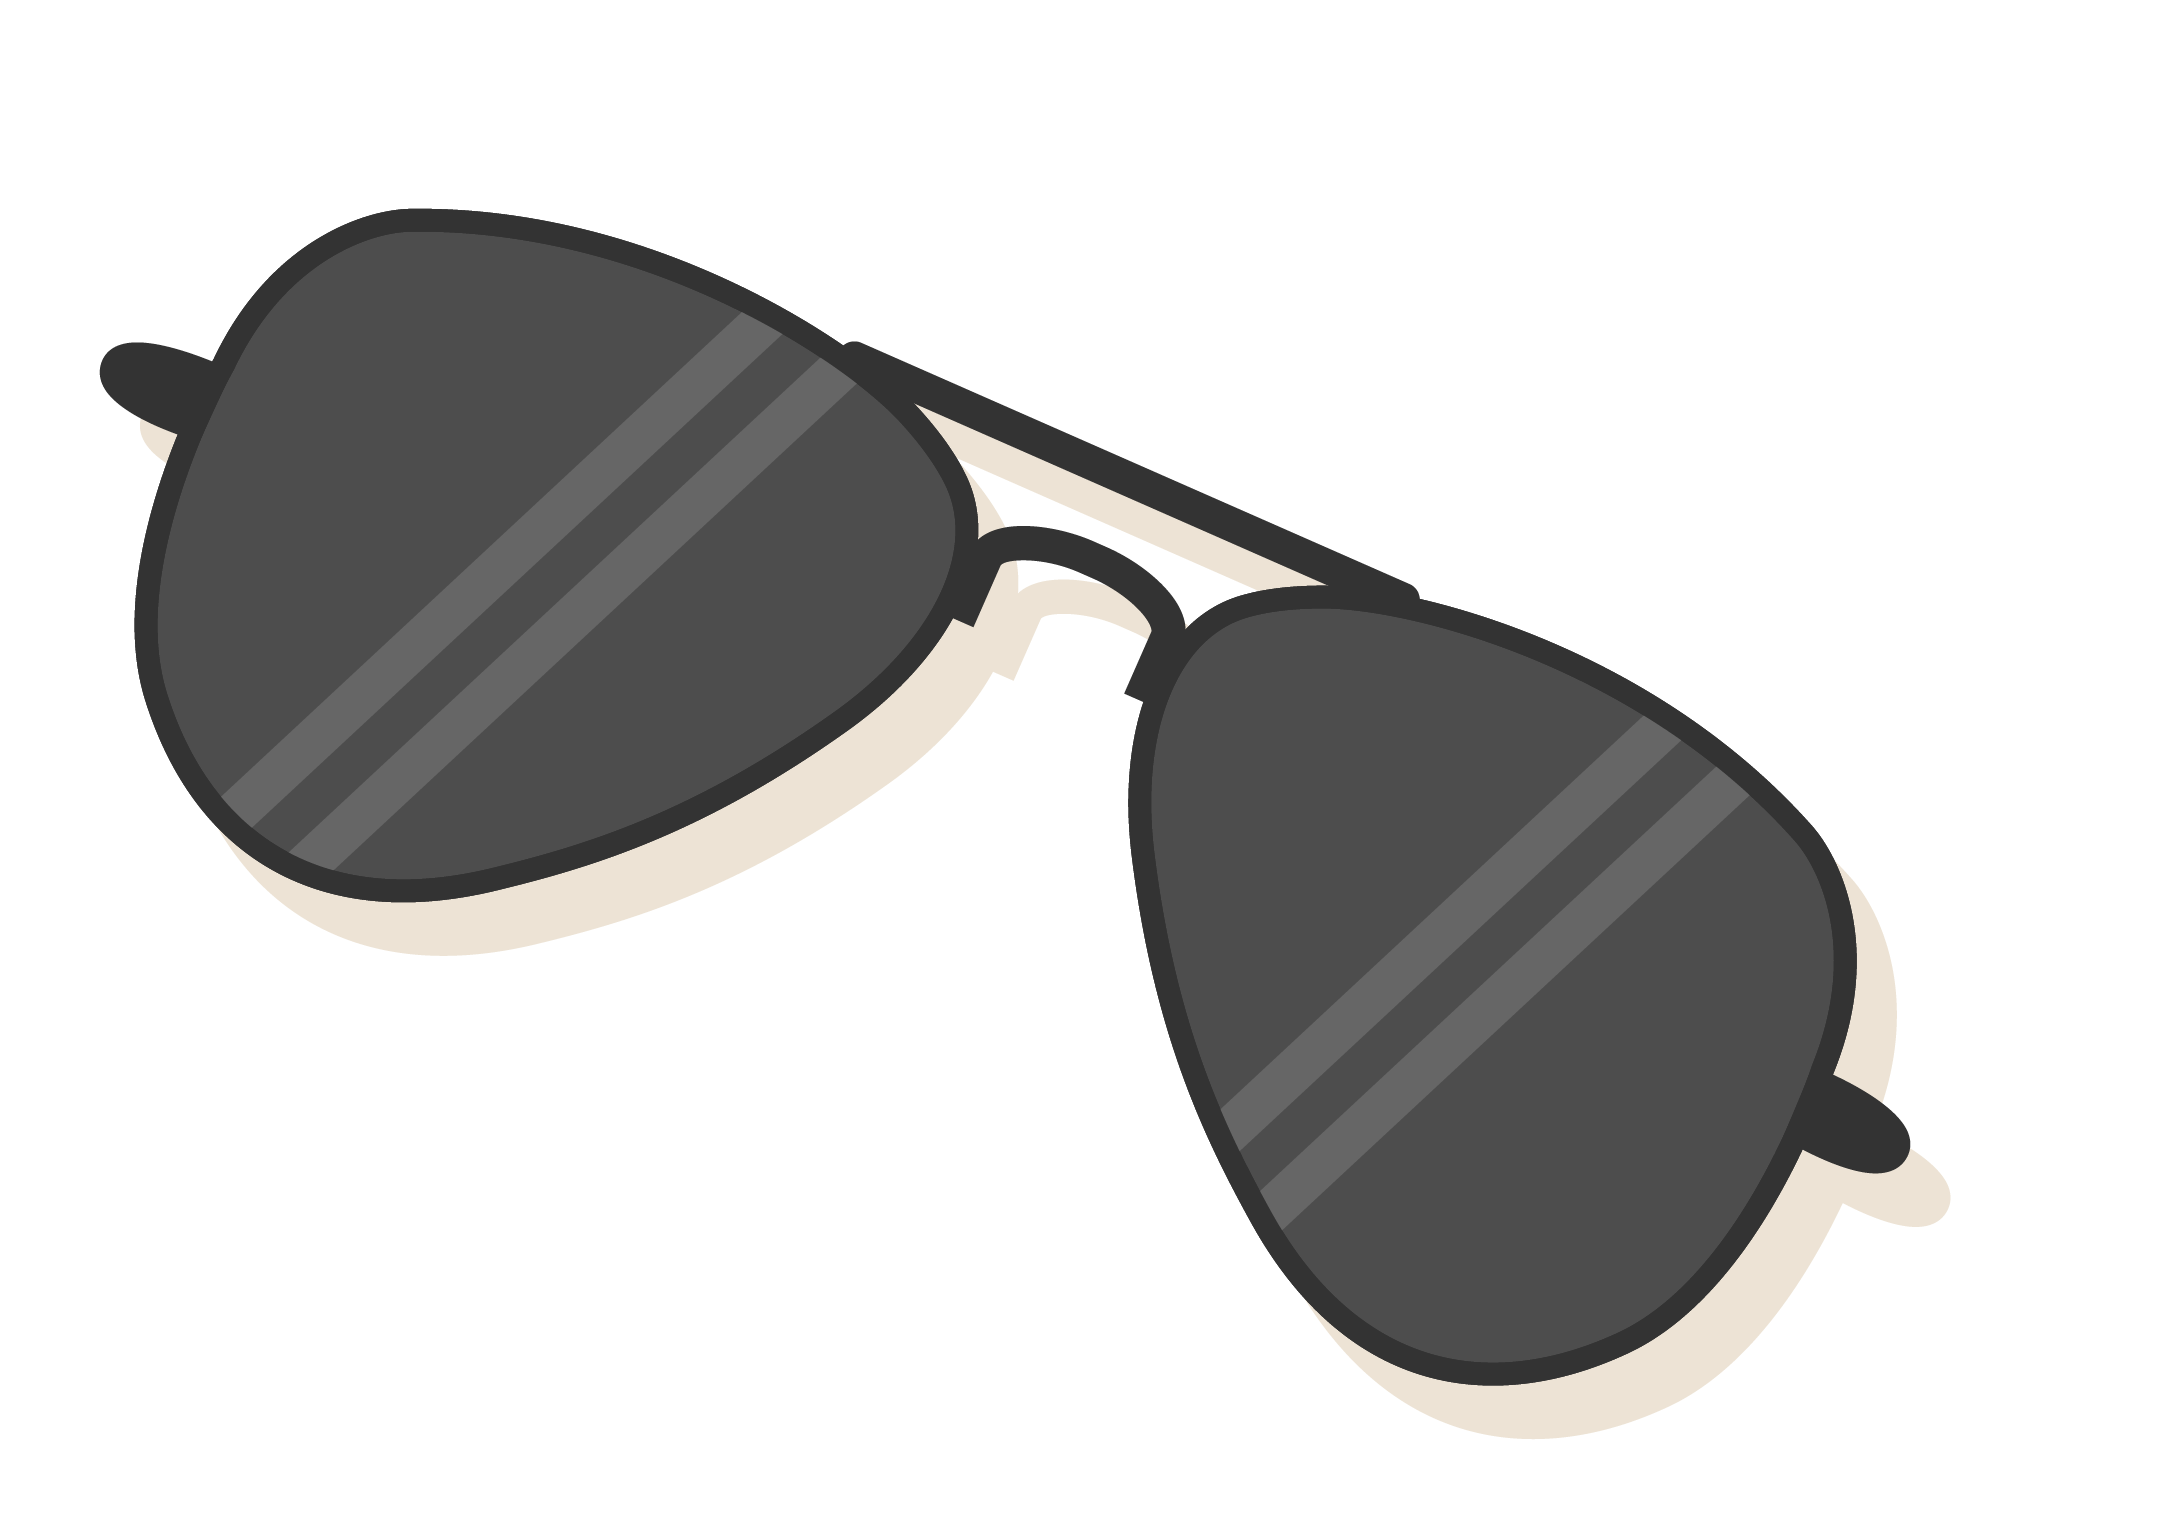 Sunglasses Cartoon Download HQ PNG Clipart